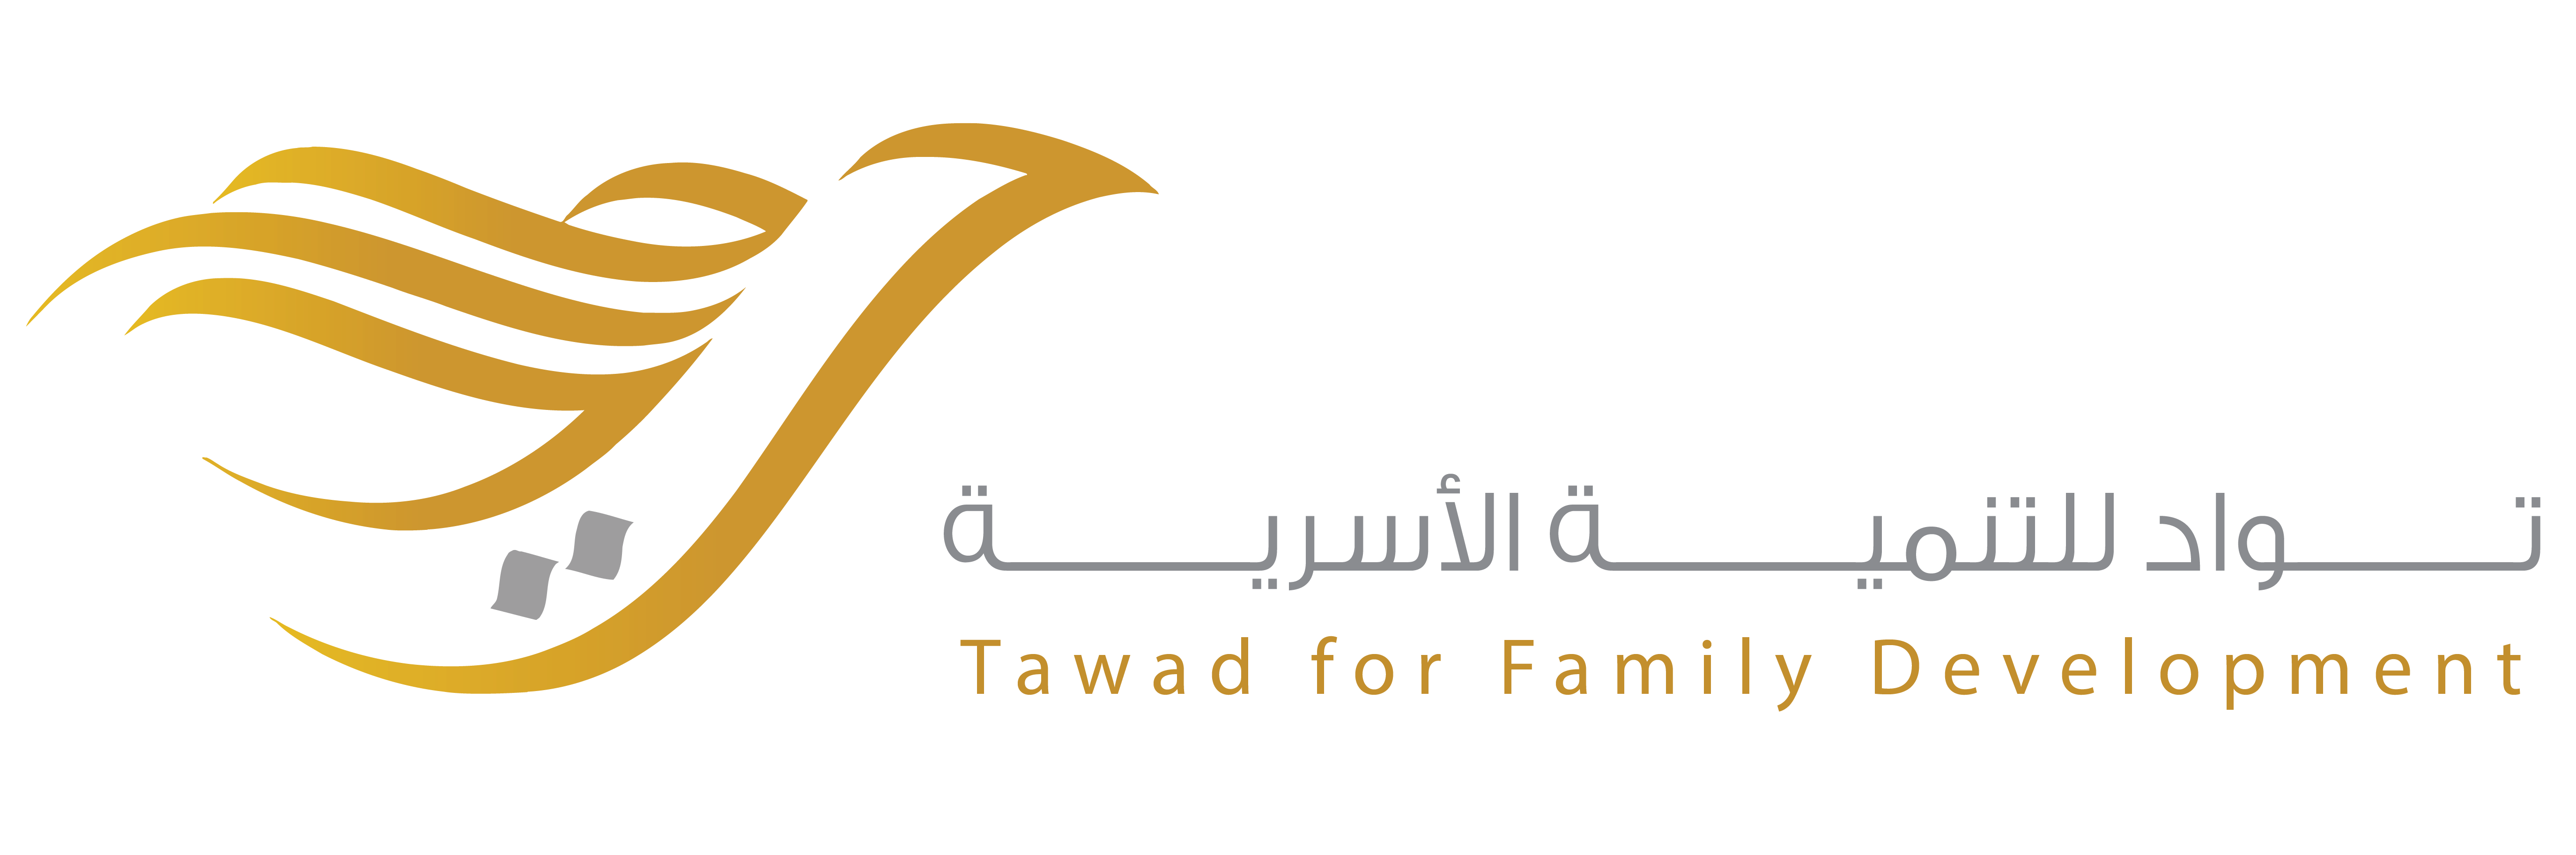 جمعية تواد للتنمية الأسرية بمنطقة الجوف